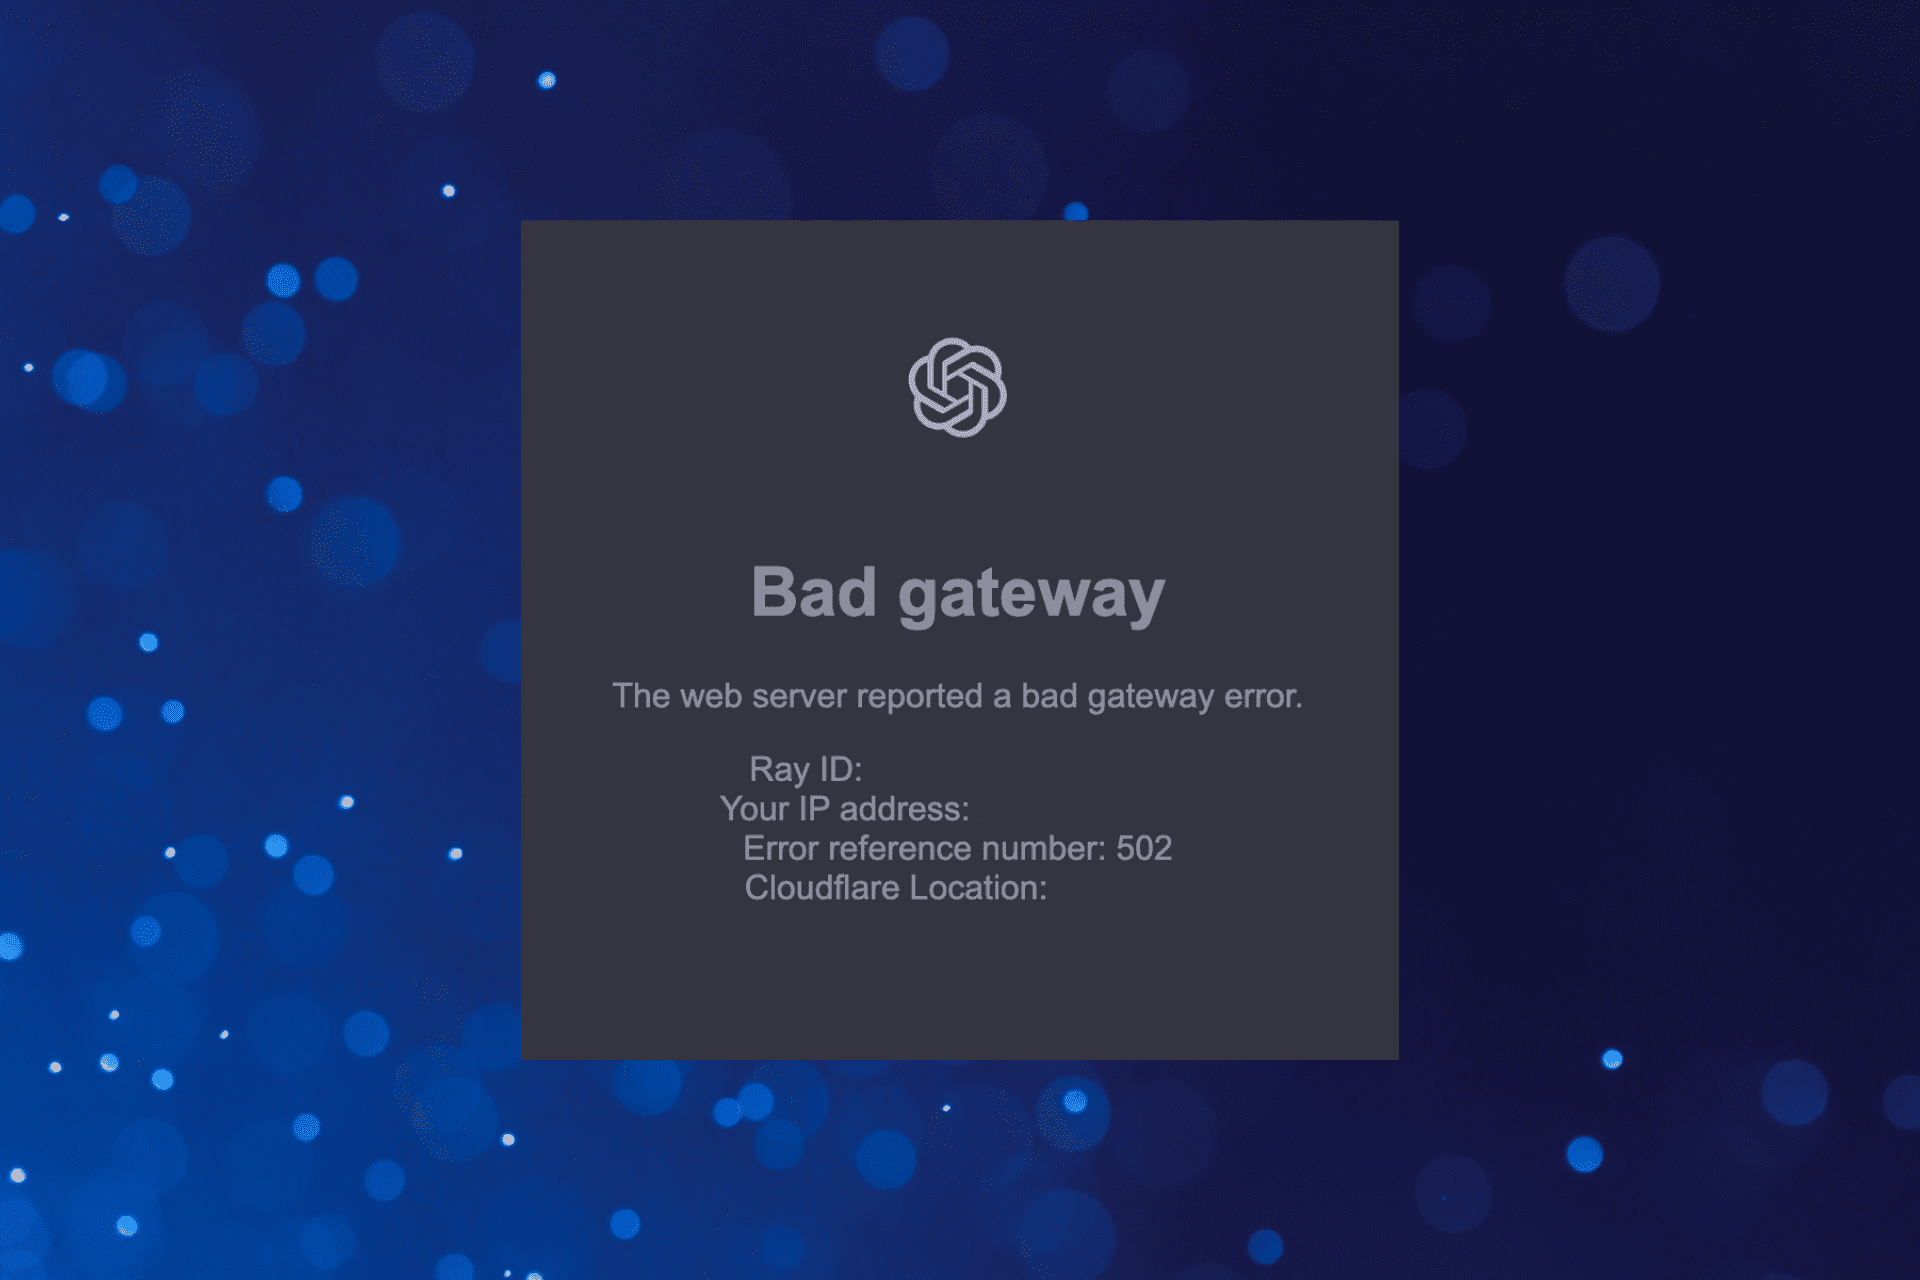 fix bad gateway error on ChatGPT